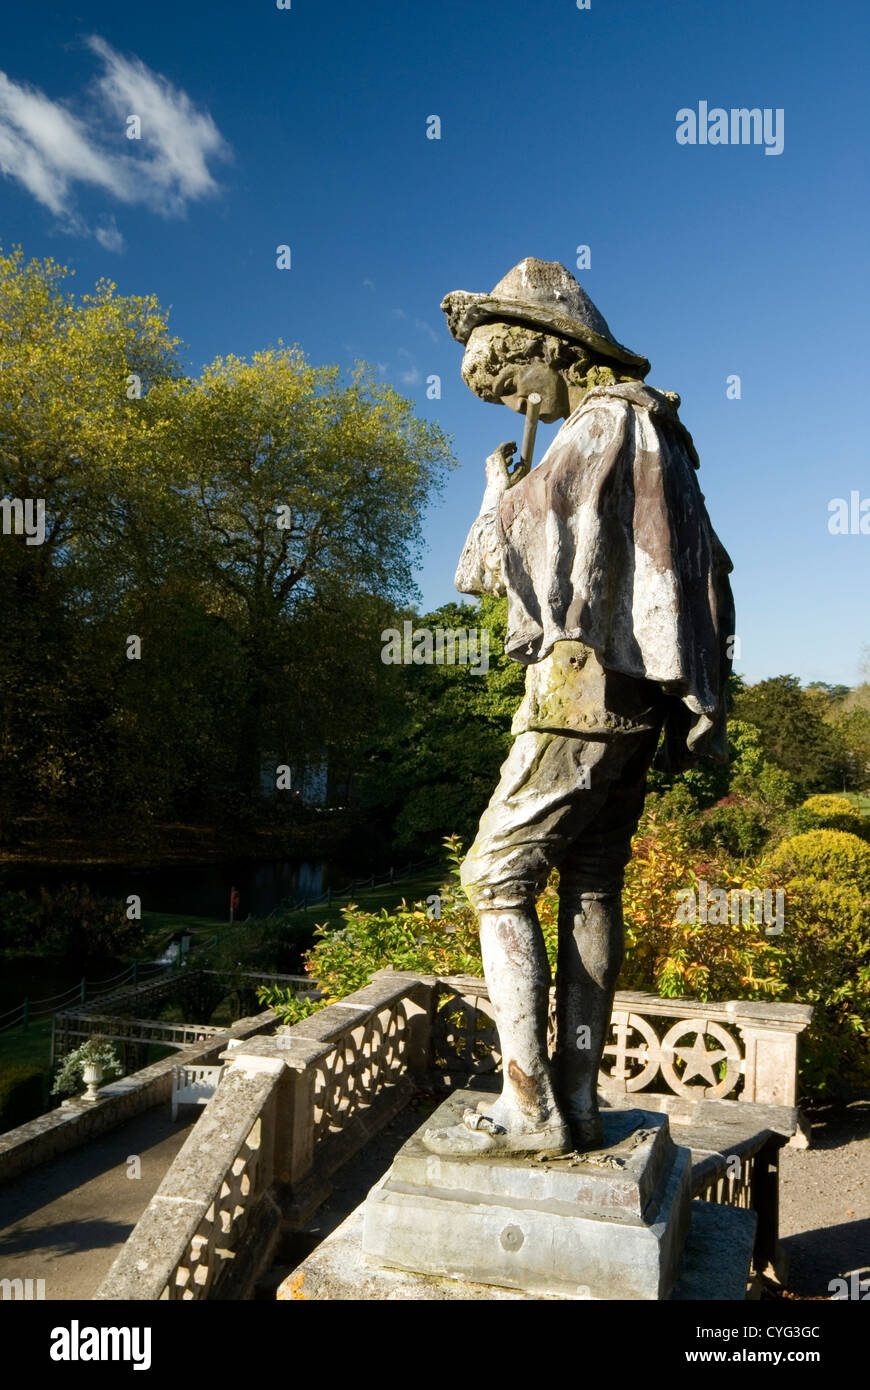 Statue de Piper et Jardins de St Fagans National History Museum/Amgueddfa Werin Cymru, Cardiff, Pays de Galles, Royaume-Uni. Banque D'Images